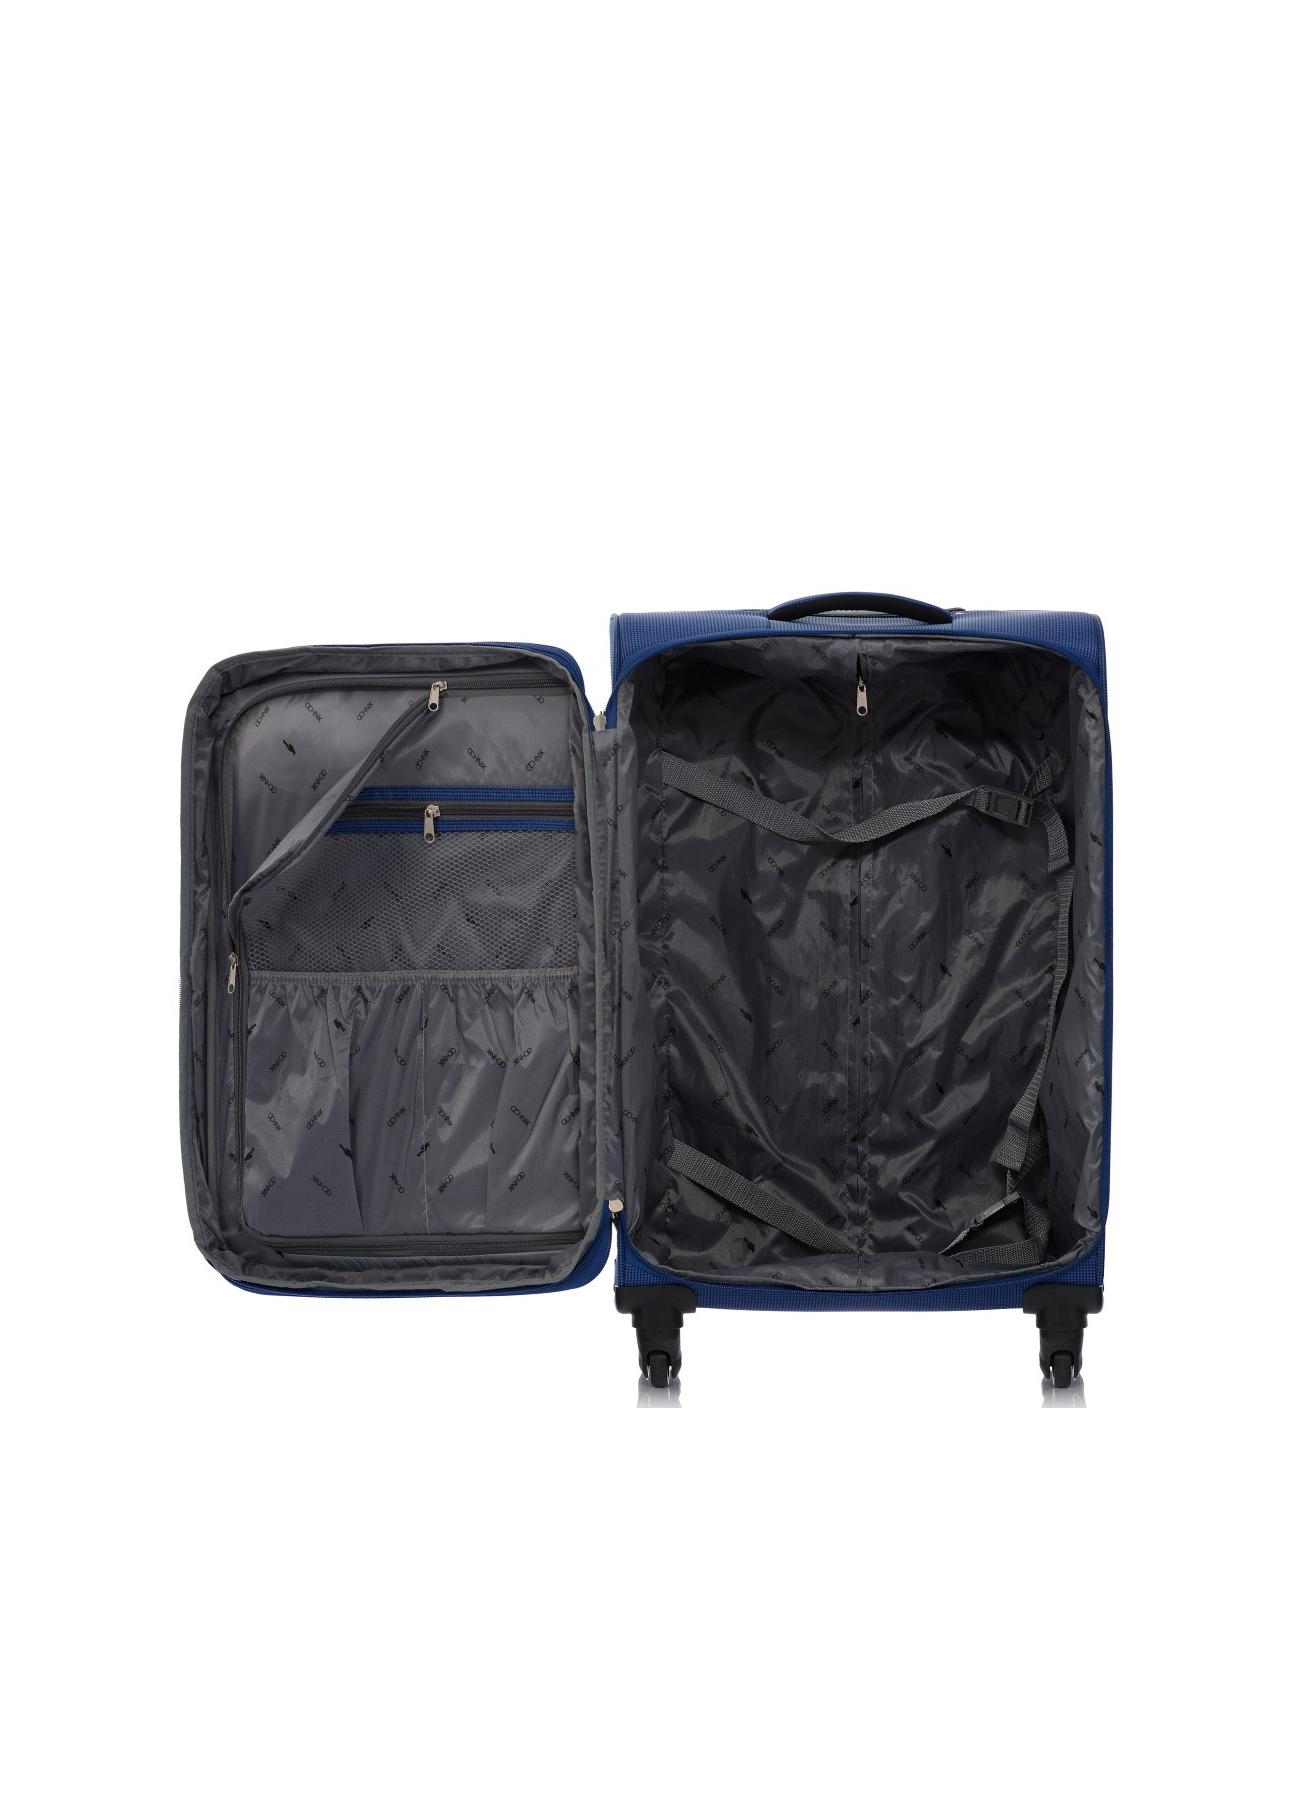 Duża walizka na kółkach WALNY-0025-69-28